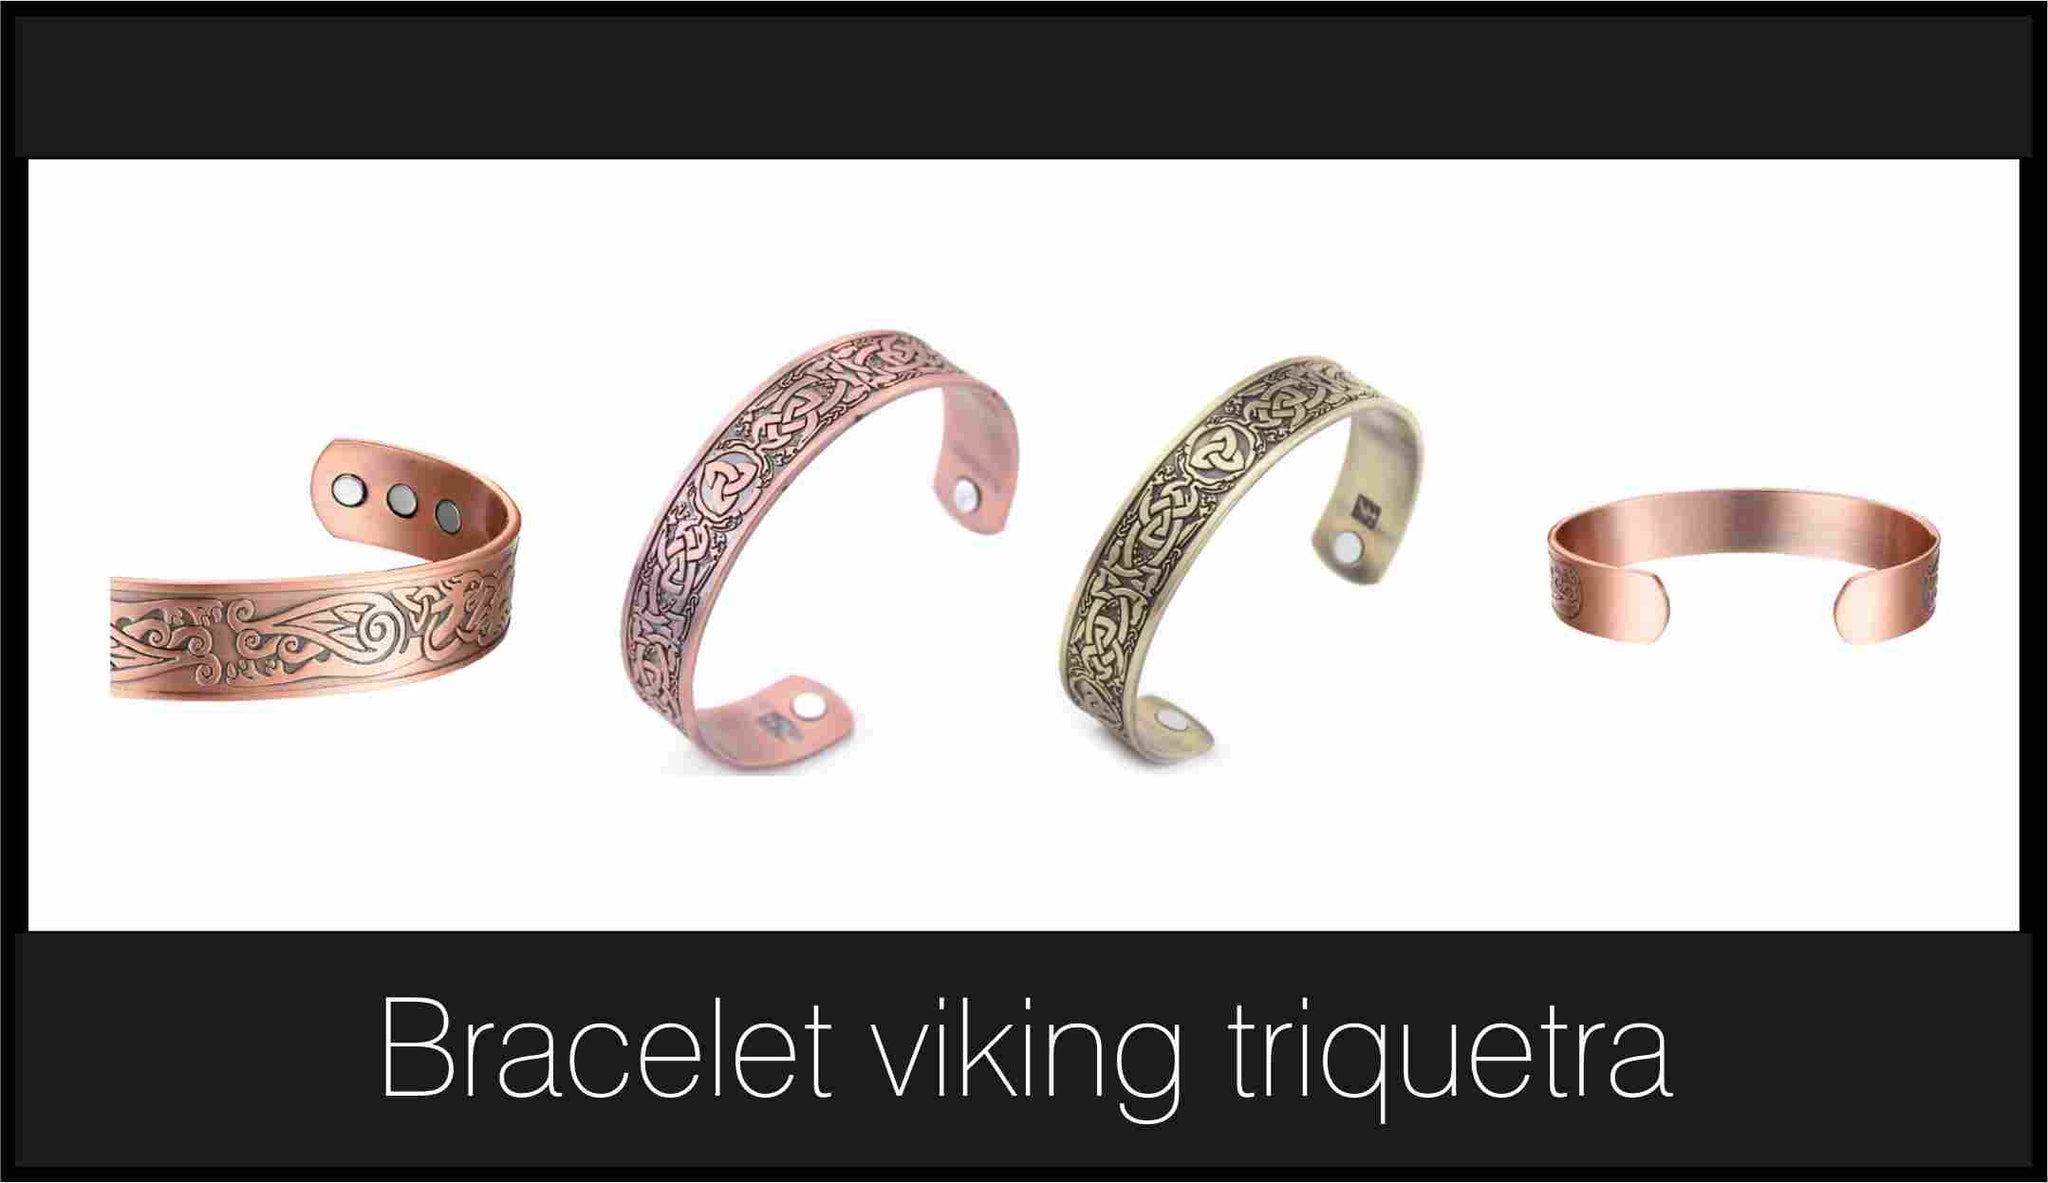 bracelet viking triquetra or ou or rose